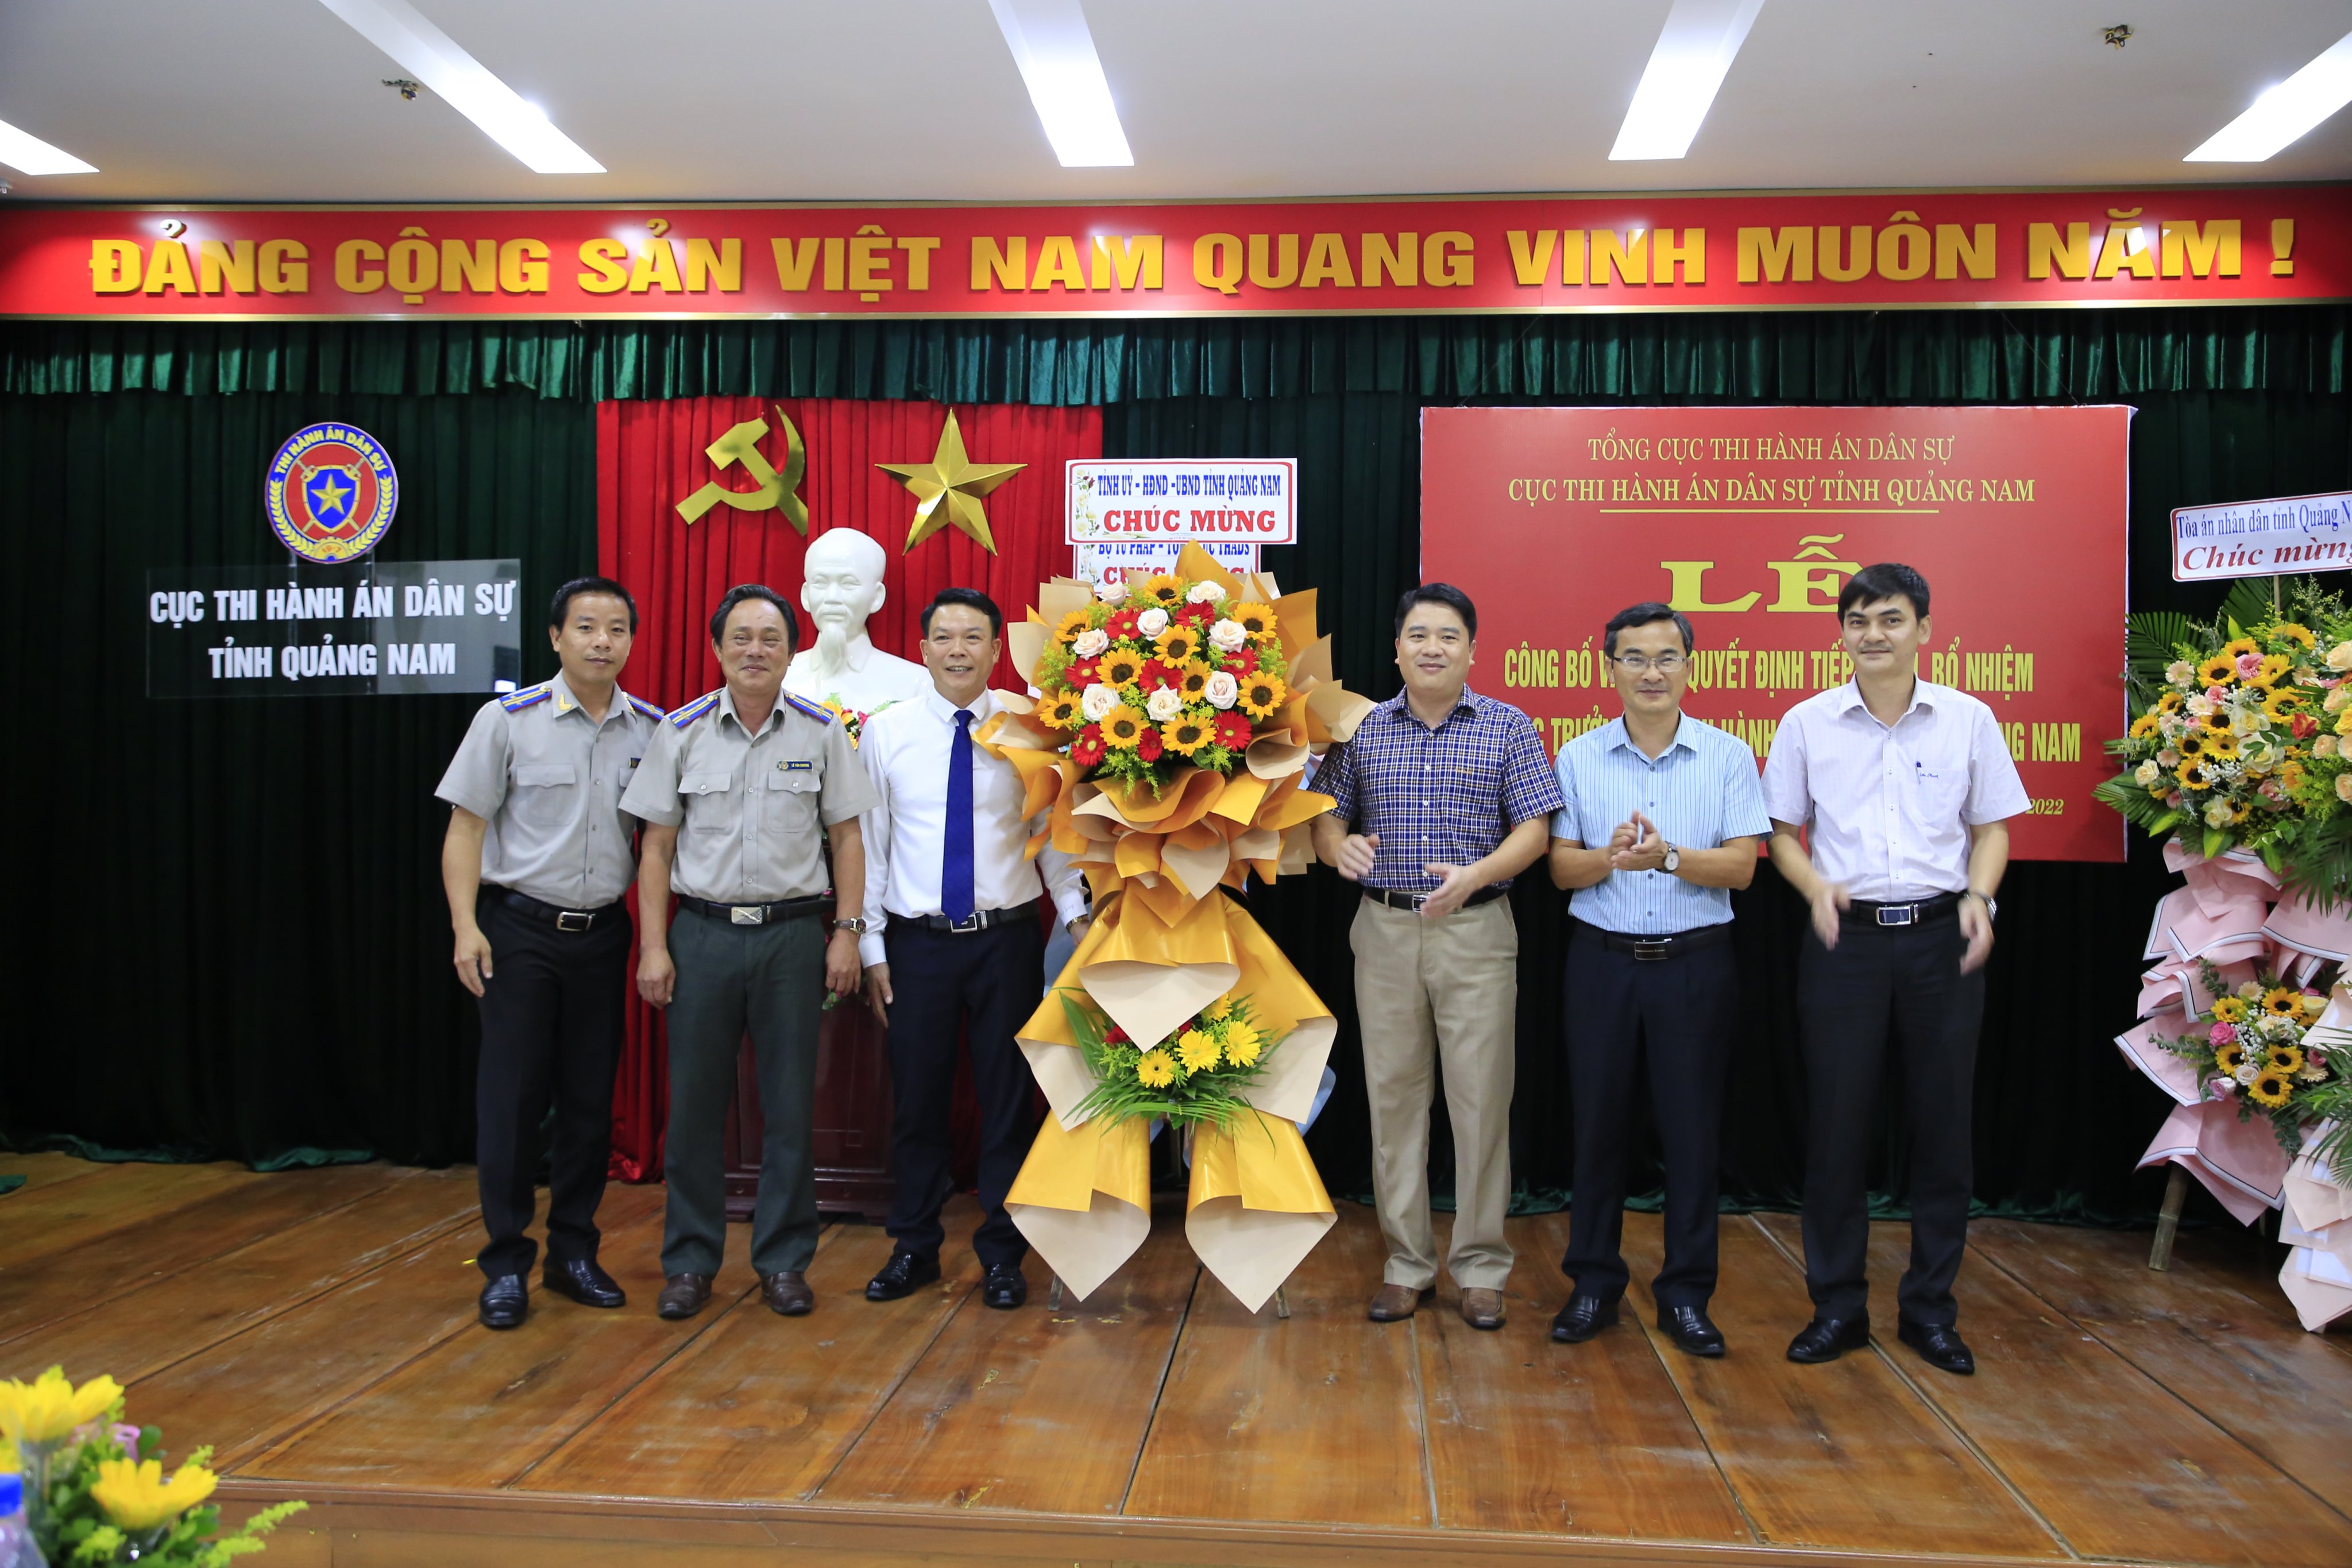 Cục Thi hành án dân sự tỉnh Quảng Nam tổ chức Lễ công bố, trao quyết định tiếp nhận, bổ nhiệm Phó Cục trưởng Cục Thi hành án dân sự tỉnh Quảng Nam